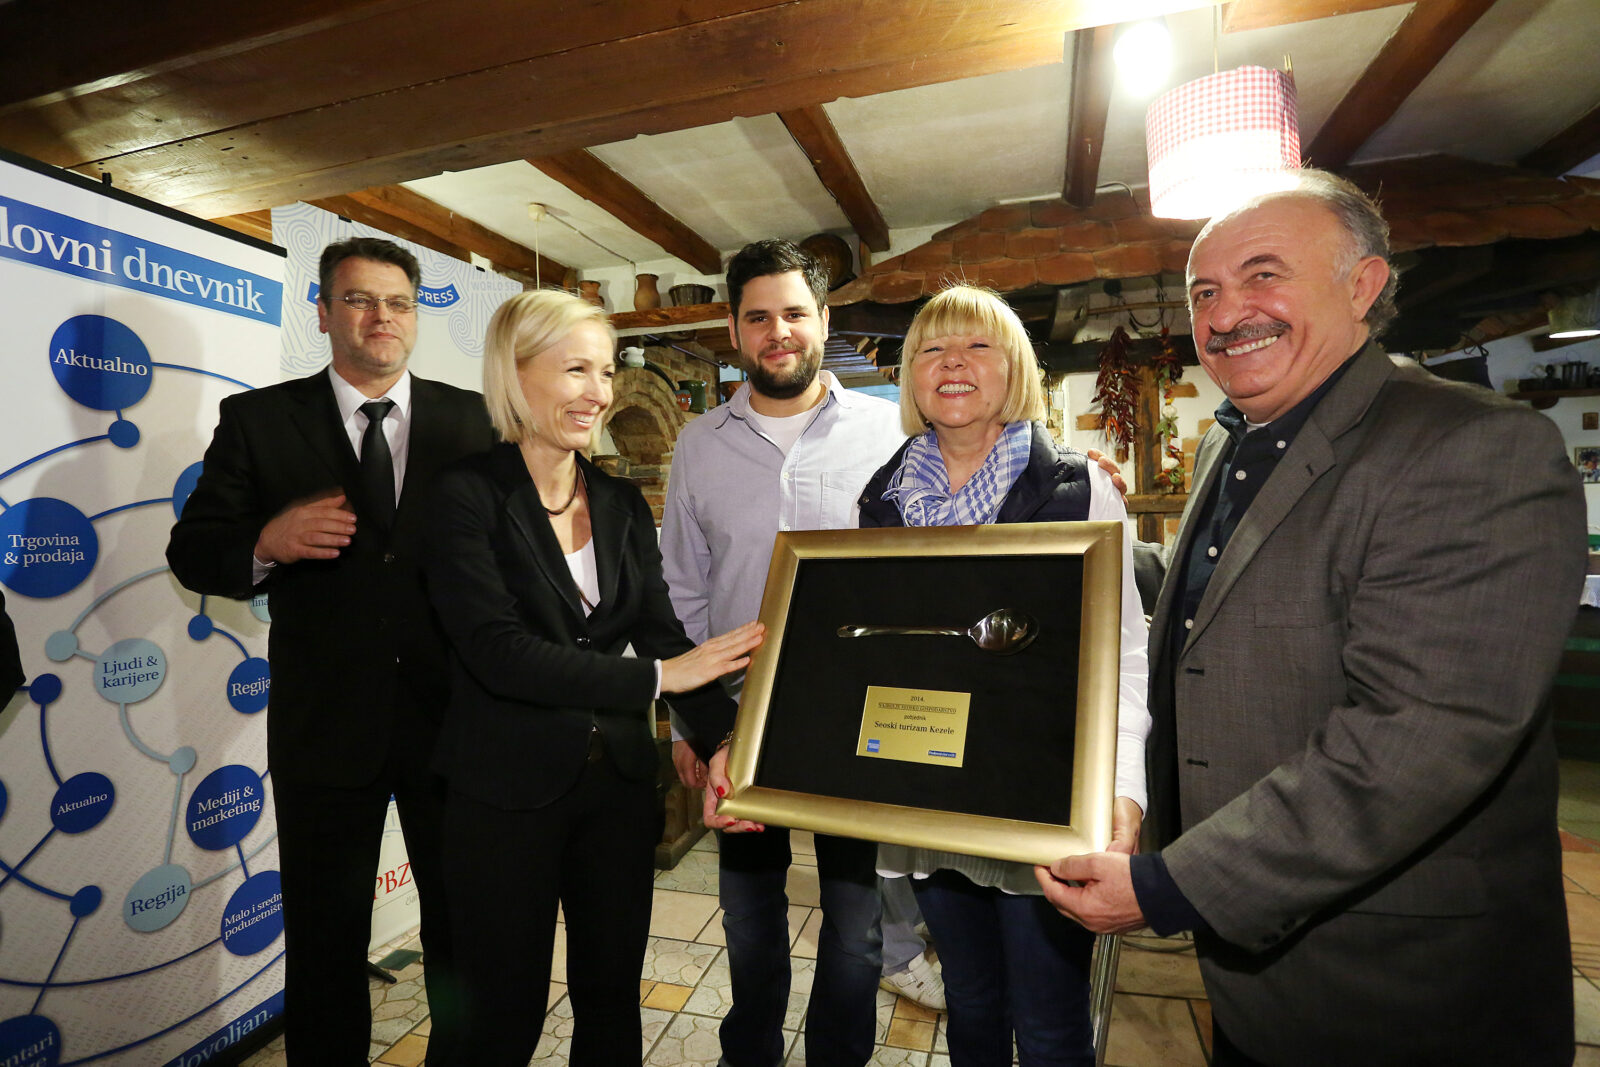 Priznanje pobjednicima dodijelila je direktorica Poslovnog dnevnika Andrea Borošić, Foto: Borna Fili